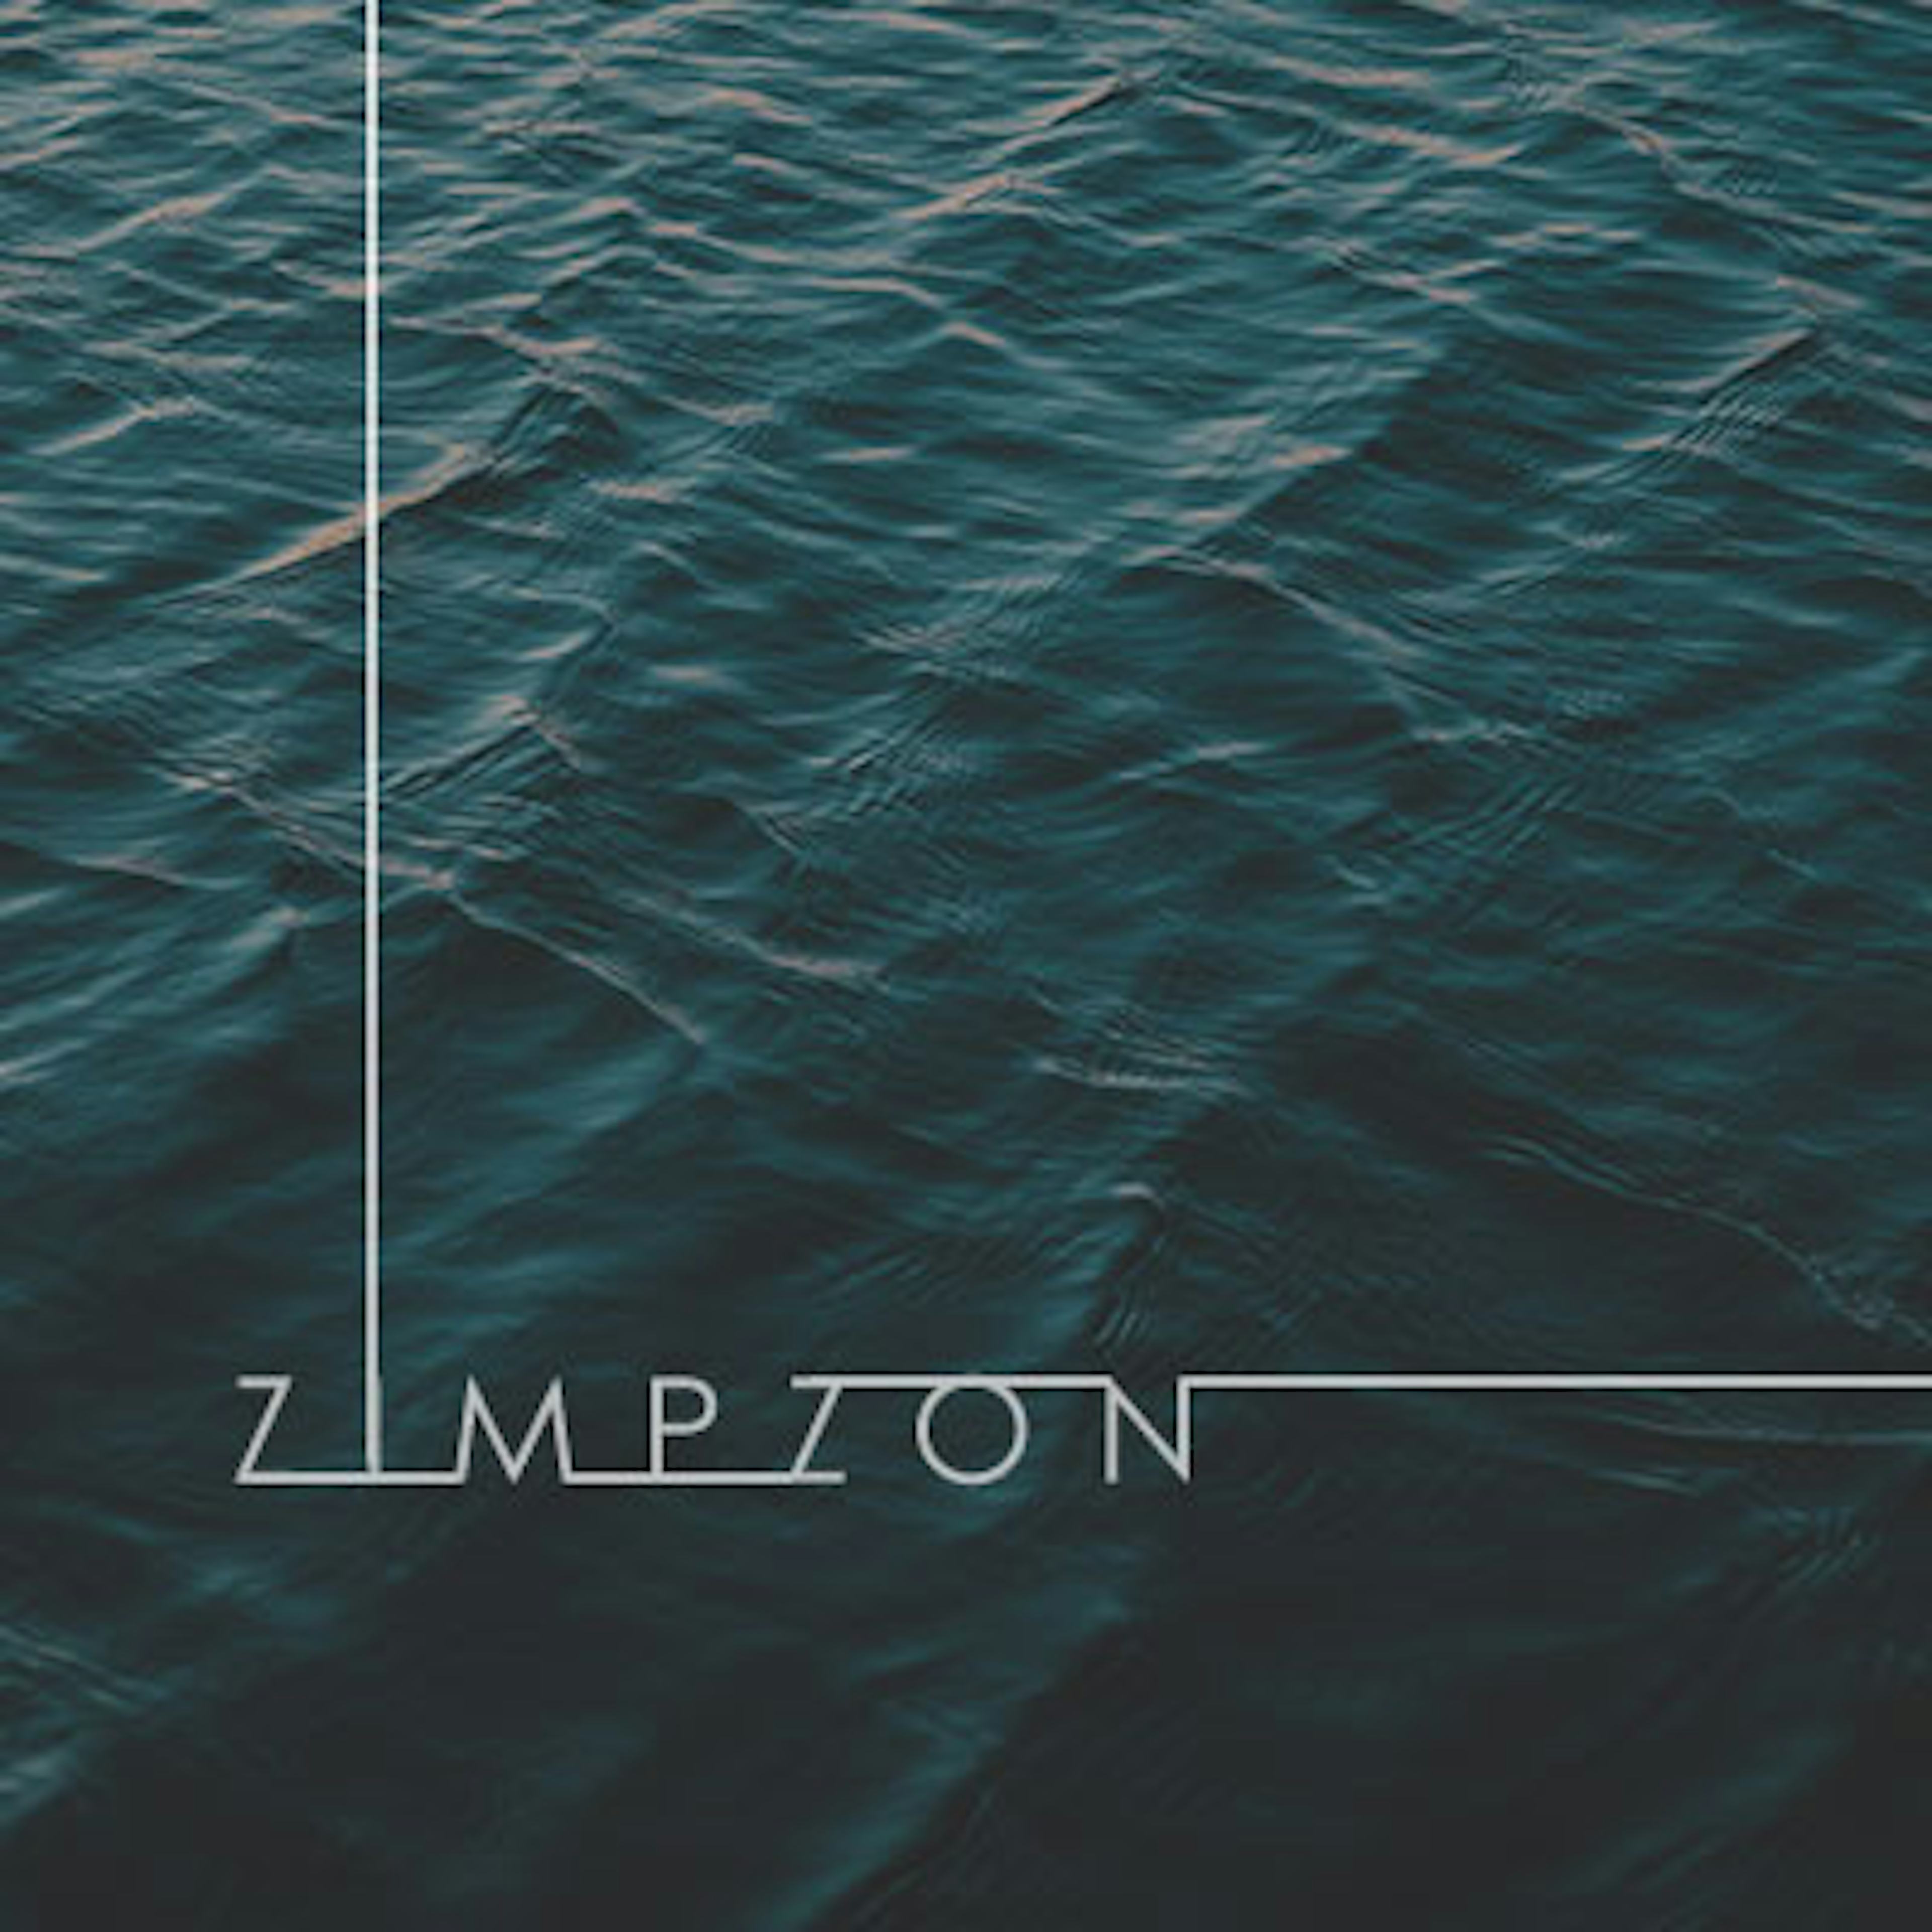 Zimpzon